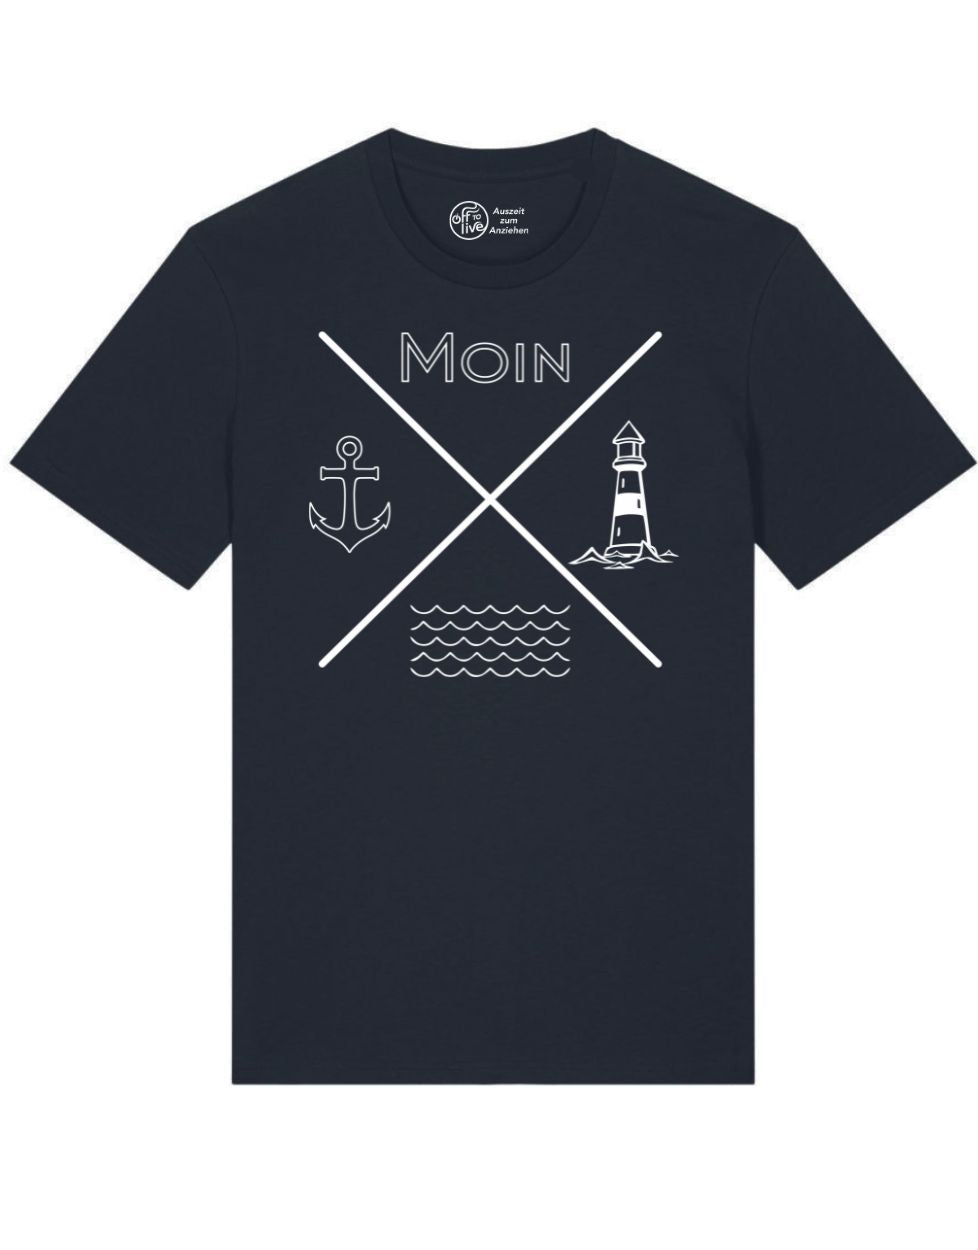 Unisex T-Shirt Moin Anker Welle Leuchturm Grafik weiß auf schwarz